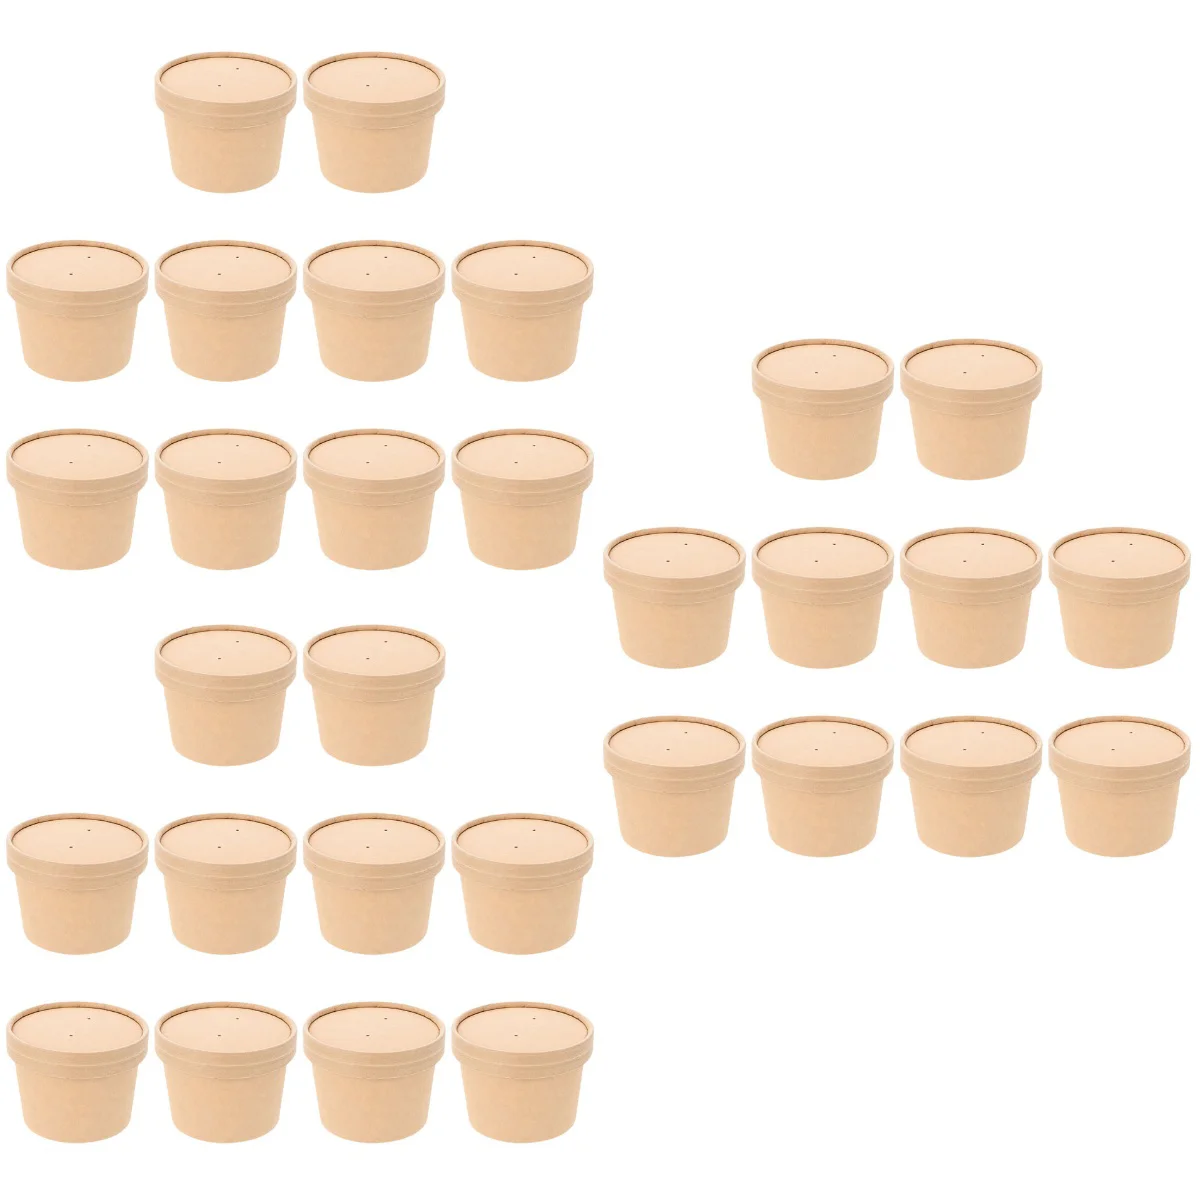 

Контейнеры для мороженого, чашки для супа, крышки, бумажная одноразовая чаша, чашка из крафтовой бумаги, картонные чаши для хранения десертов на вынос, унции